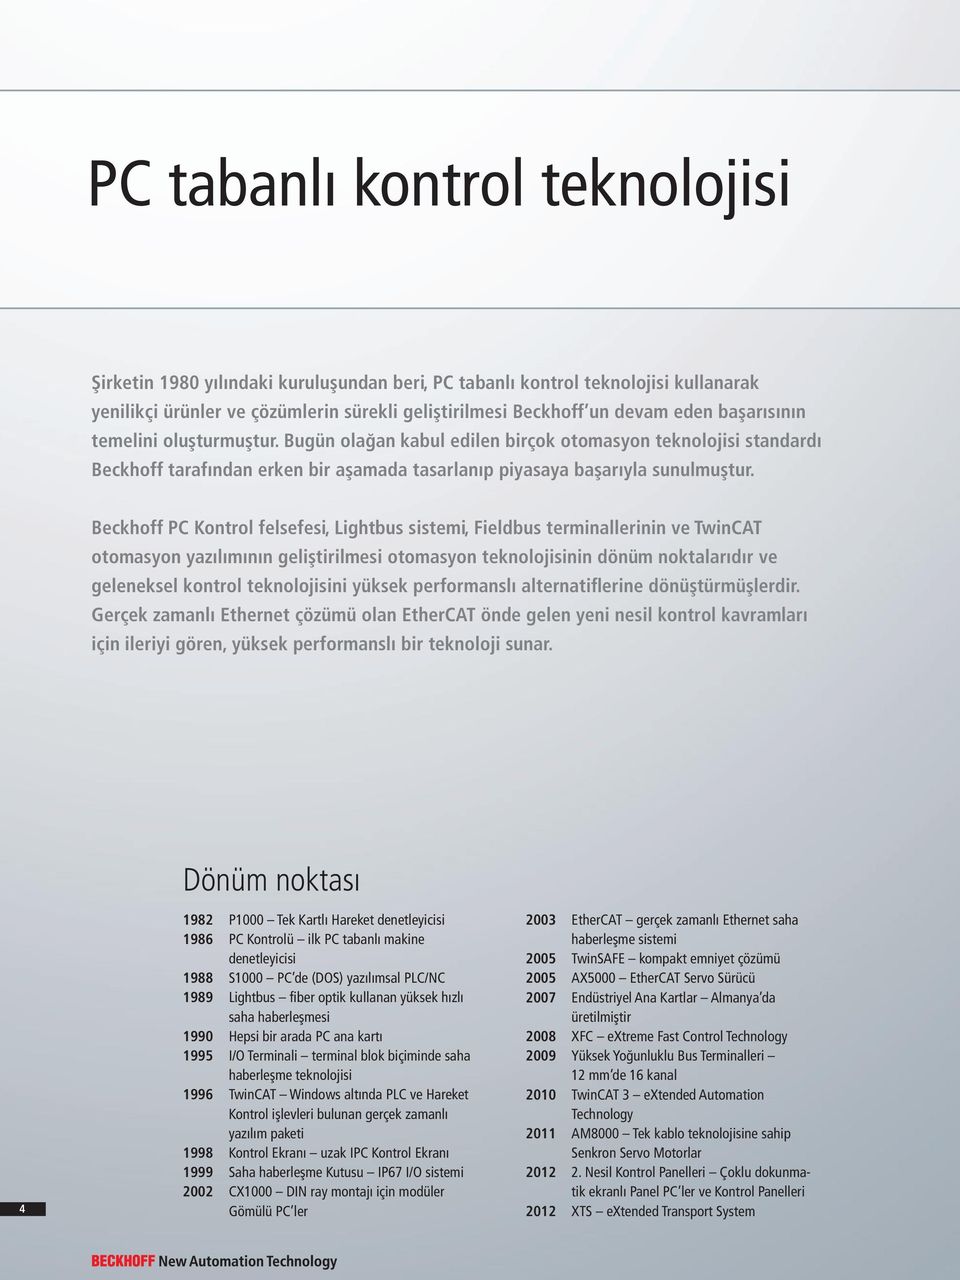 Beckhoff PC Kontrol felsefesi, Lightbus sistemi, Fieldbus terminallerinin ve TwinCAT otomasyon yazılımının geliştirilmesi otomasyon teknolojisinin dönüm noktalarıdır ve geleneksel kontrol